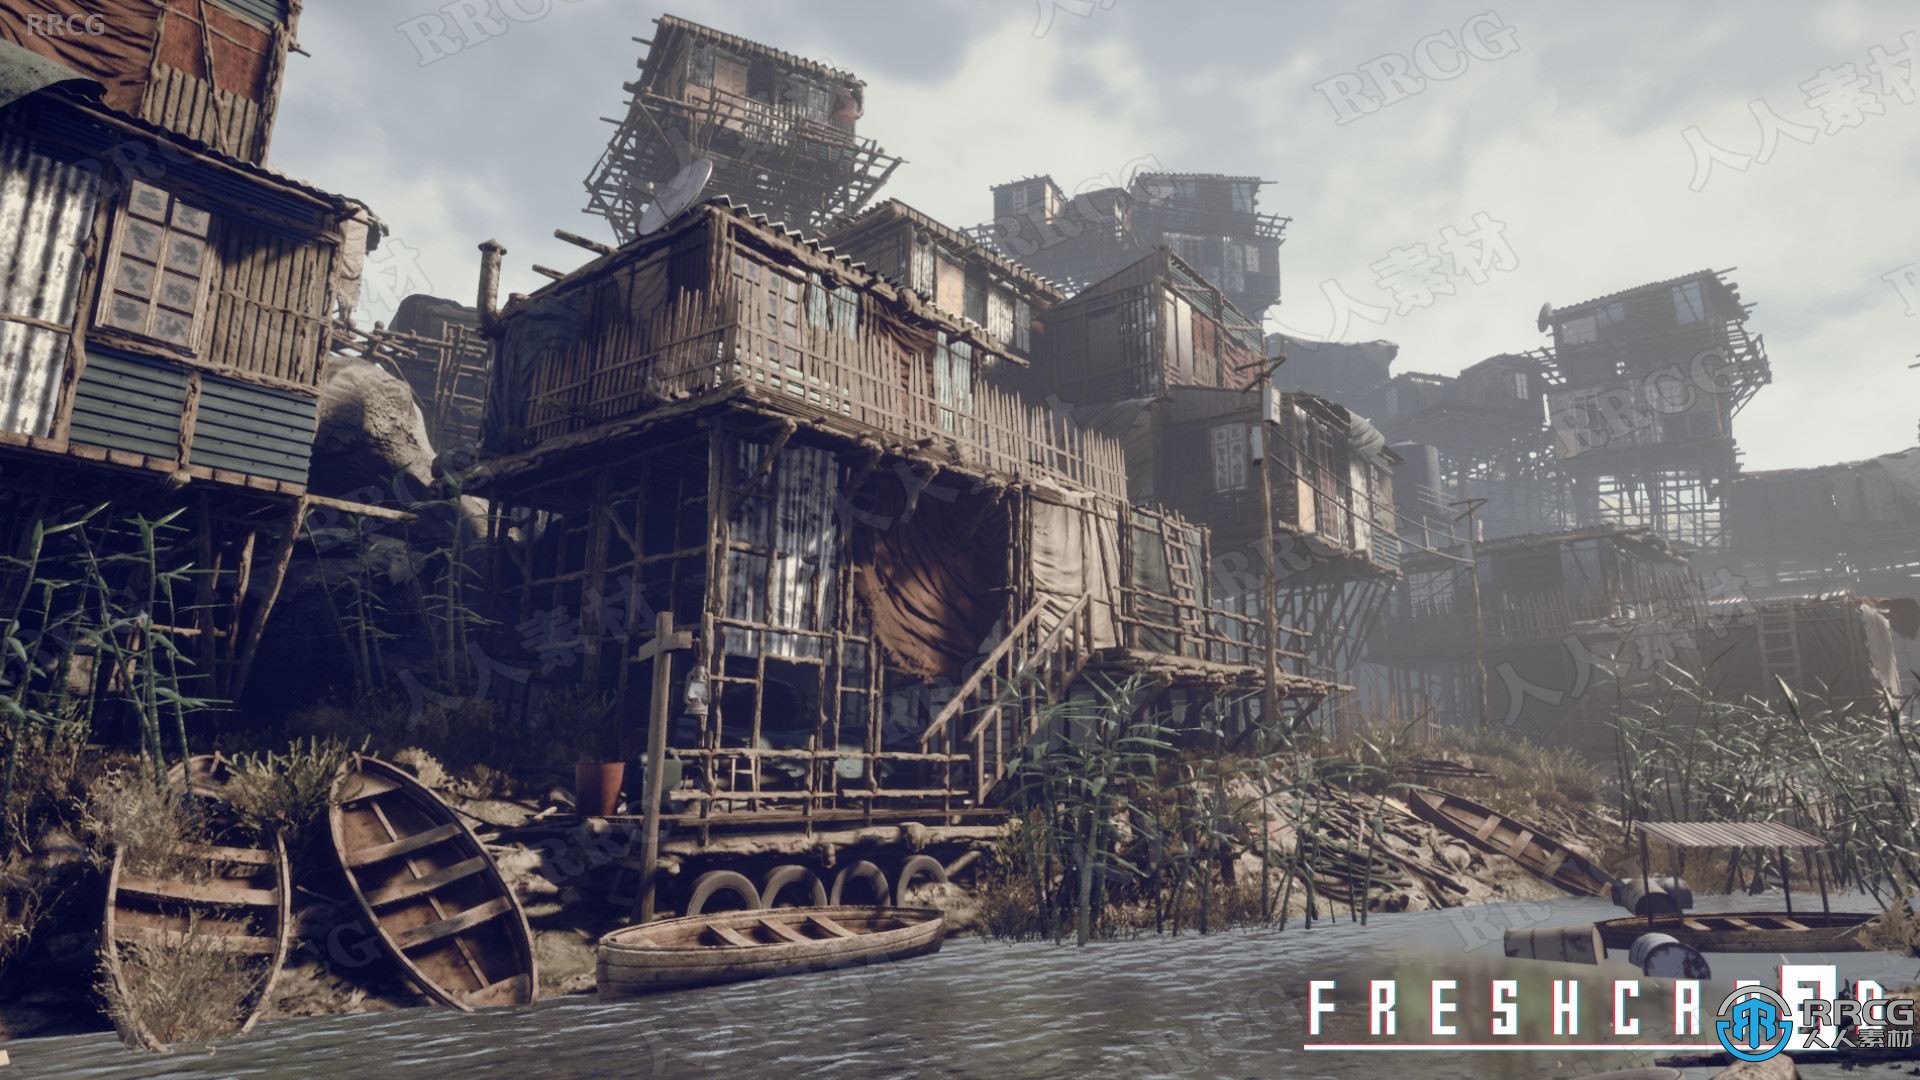 貧民窟破敗小鎮模塊化游戲環境Unreal Engine游戲素材資源